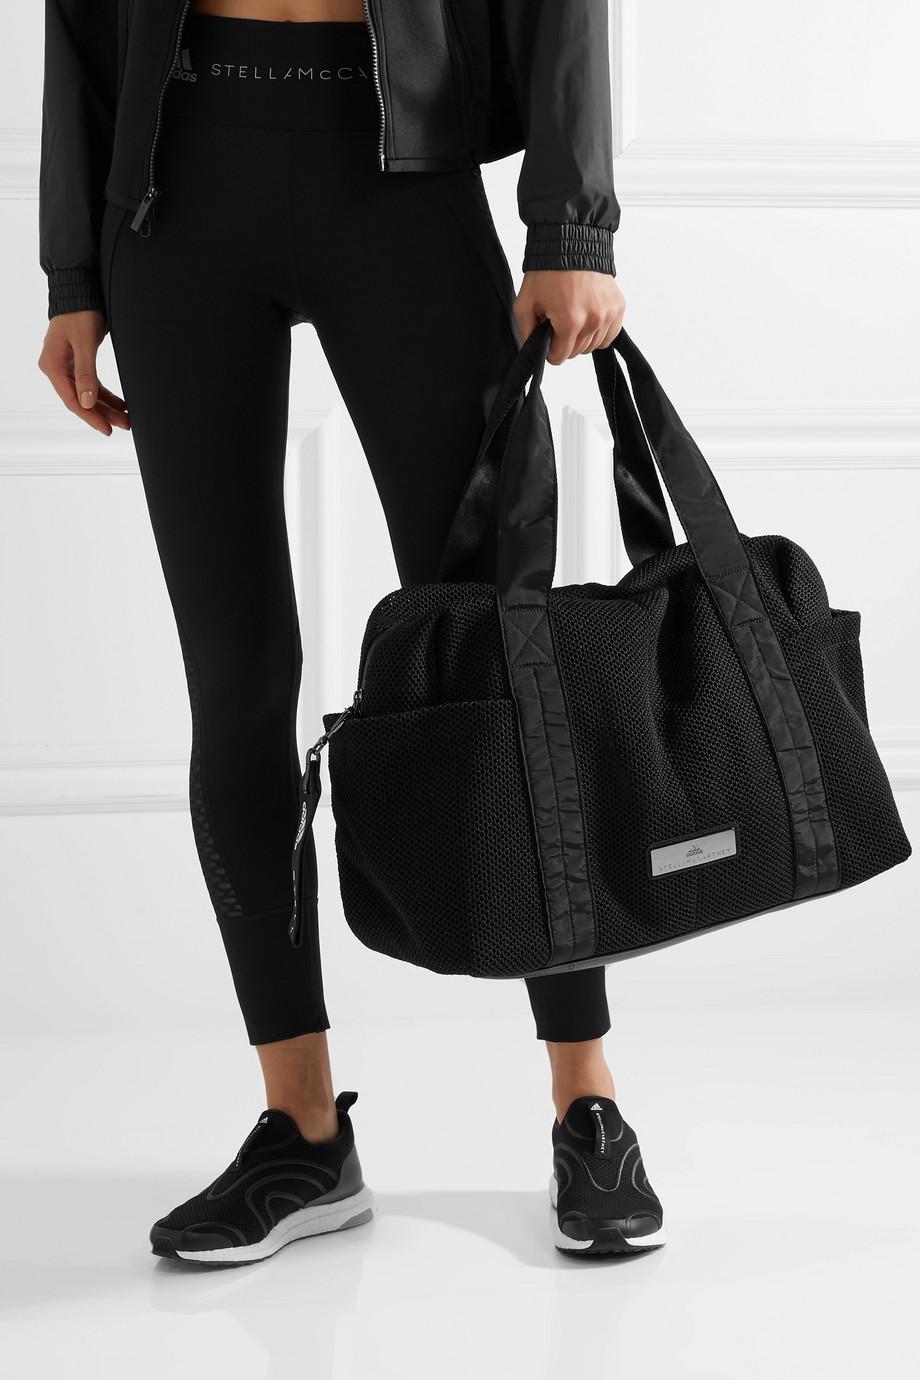 adidas By Stella McCartney Shipshape Mesh Gym Bag in Black | Lyst Canada